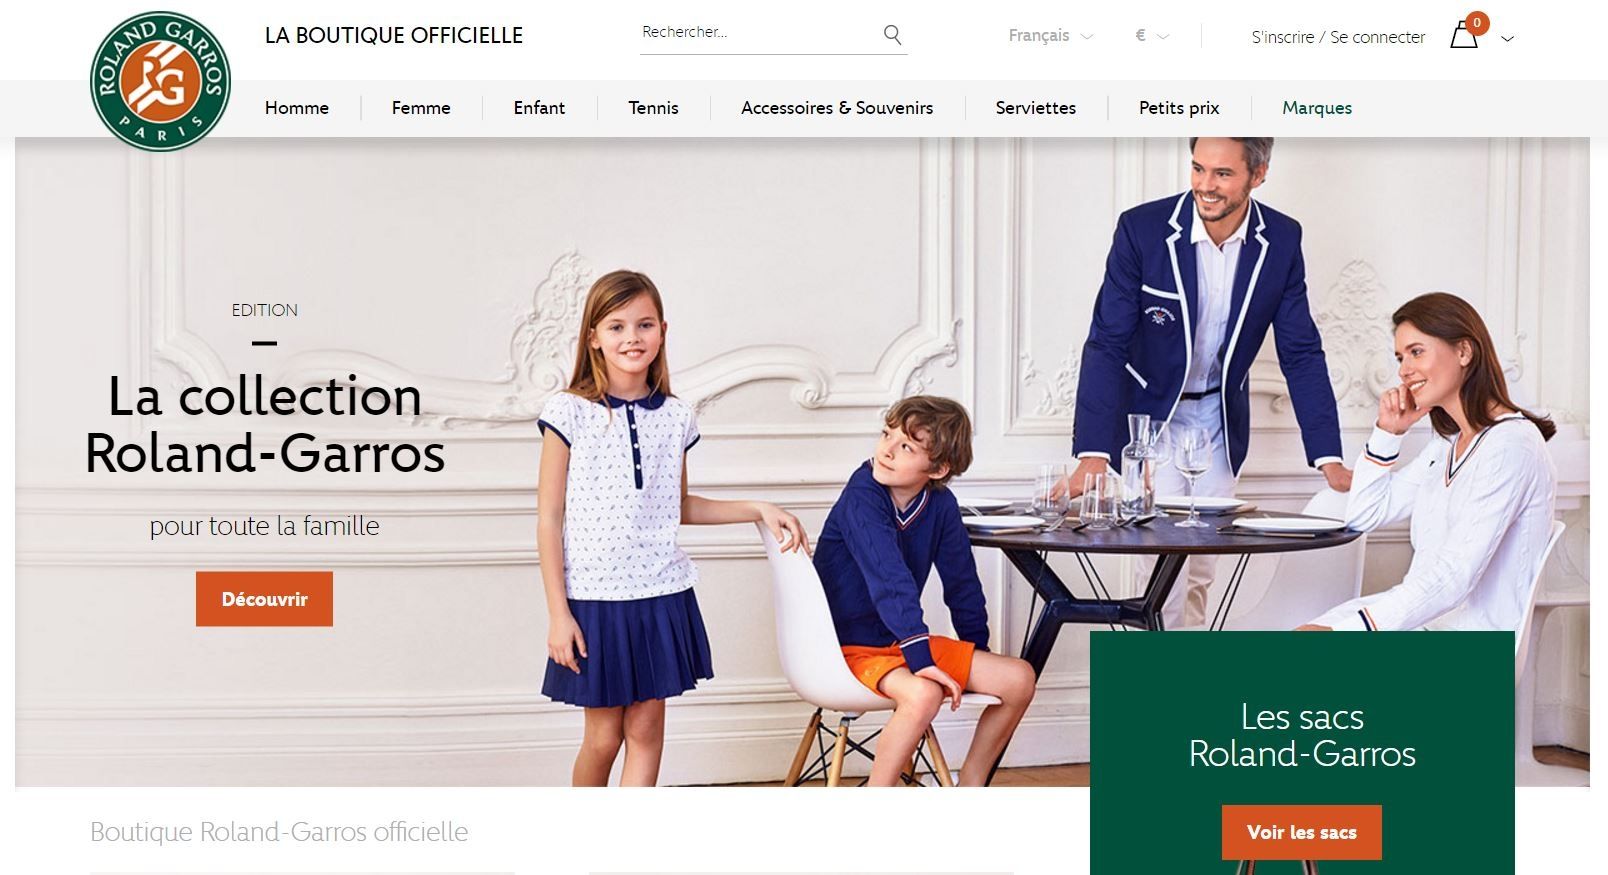 La boutique en ligne Roland-Garros fait peau neuve - Retail